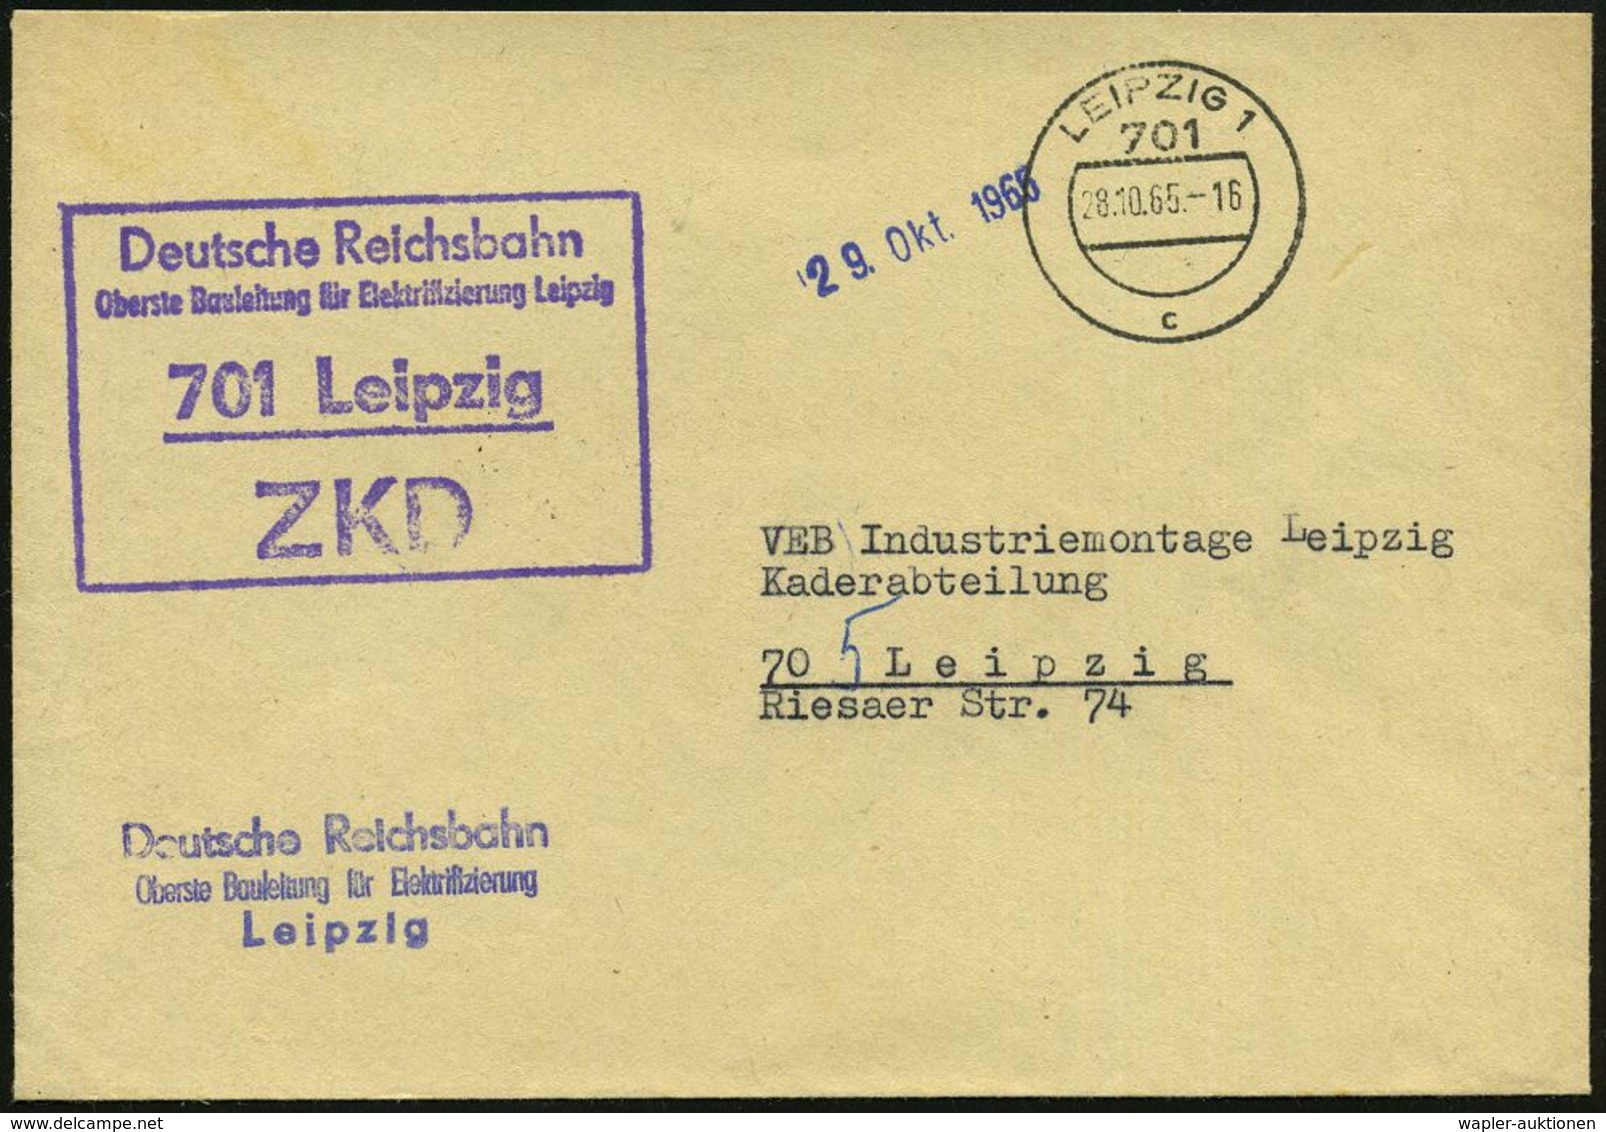 EISENBAHN-GESELLSCHAFTEN / REICHSBAHN / BUNDESBAHN : 701 Leipzig/ ZKD/ Deutsche Reichsbahn/ Oberste Bauleitung Für Elekt - Treni